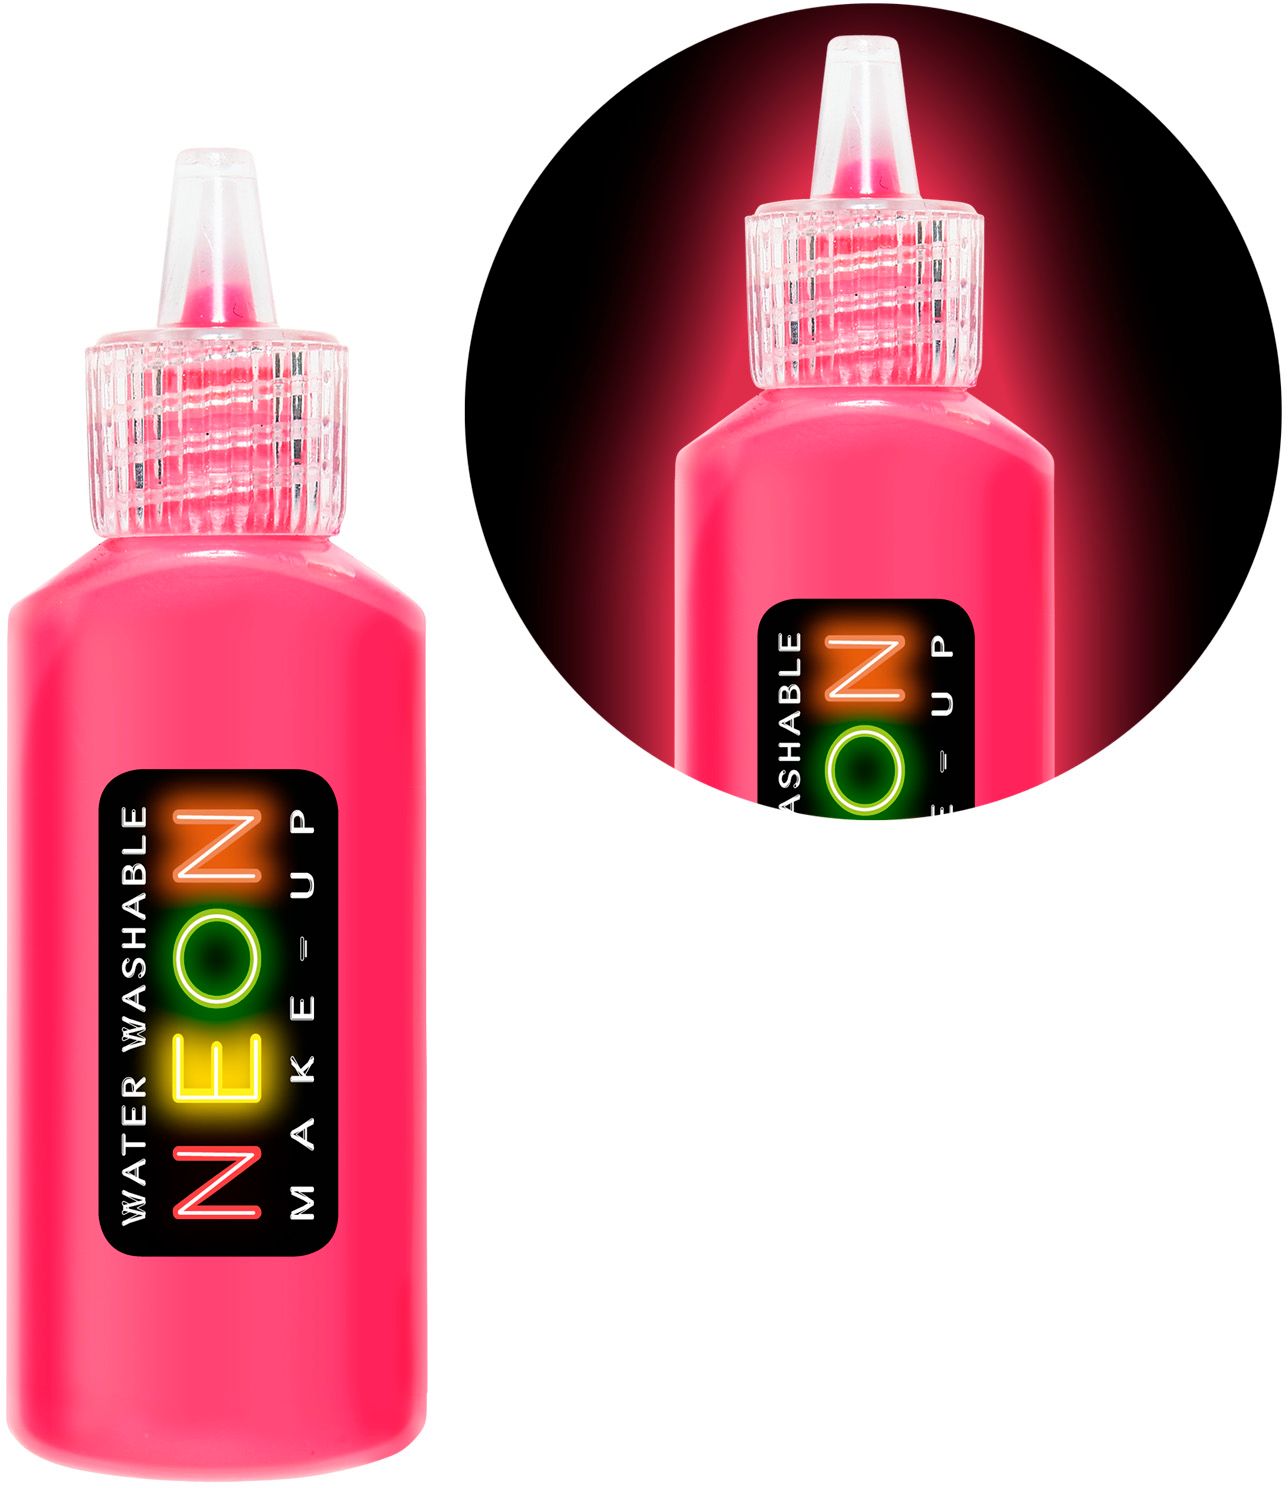 Make-up flesje neon roze